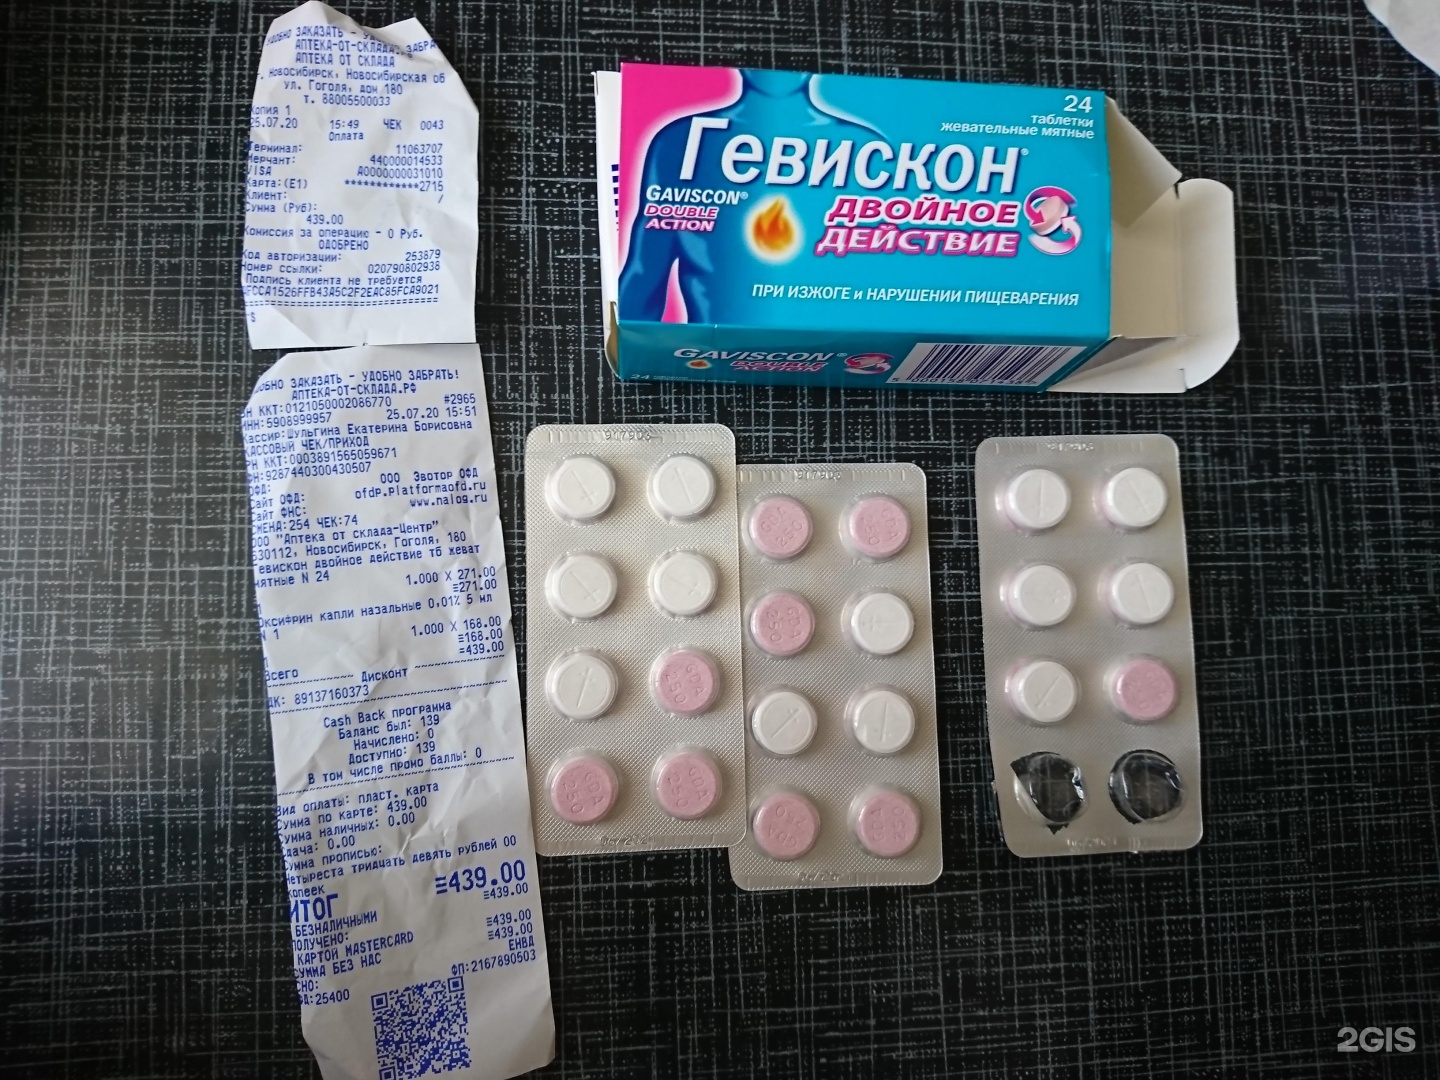 Аптека На Гоголя Новосибирск Телефон